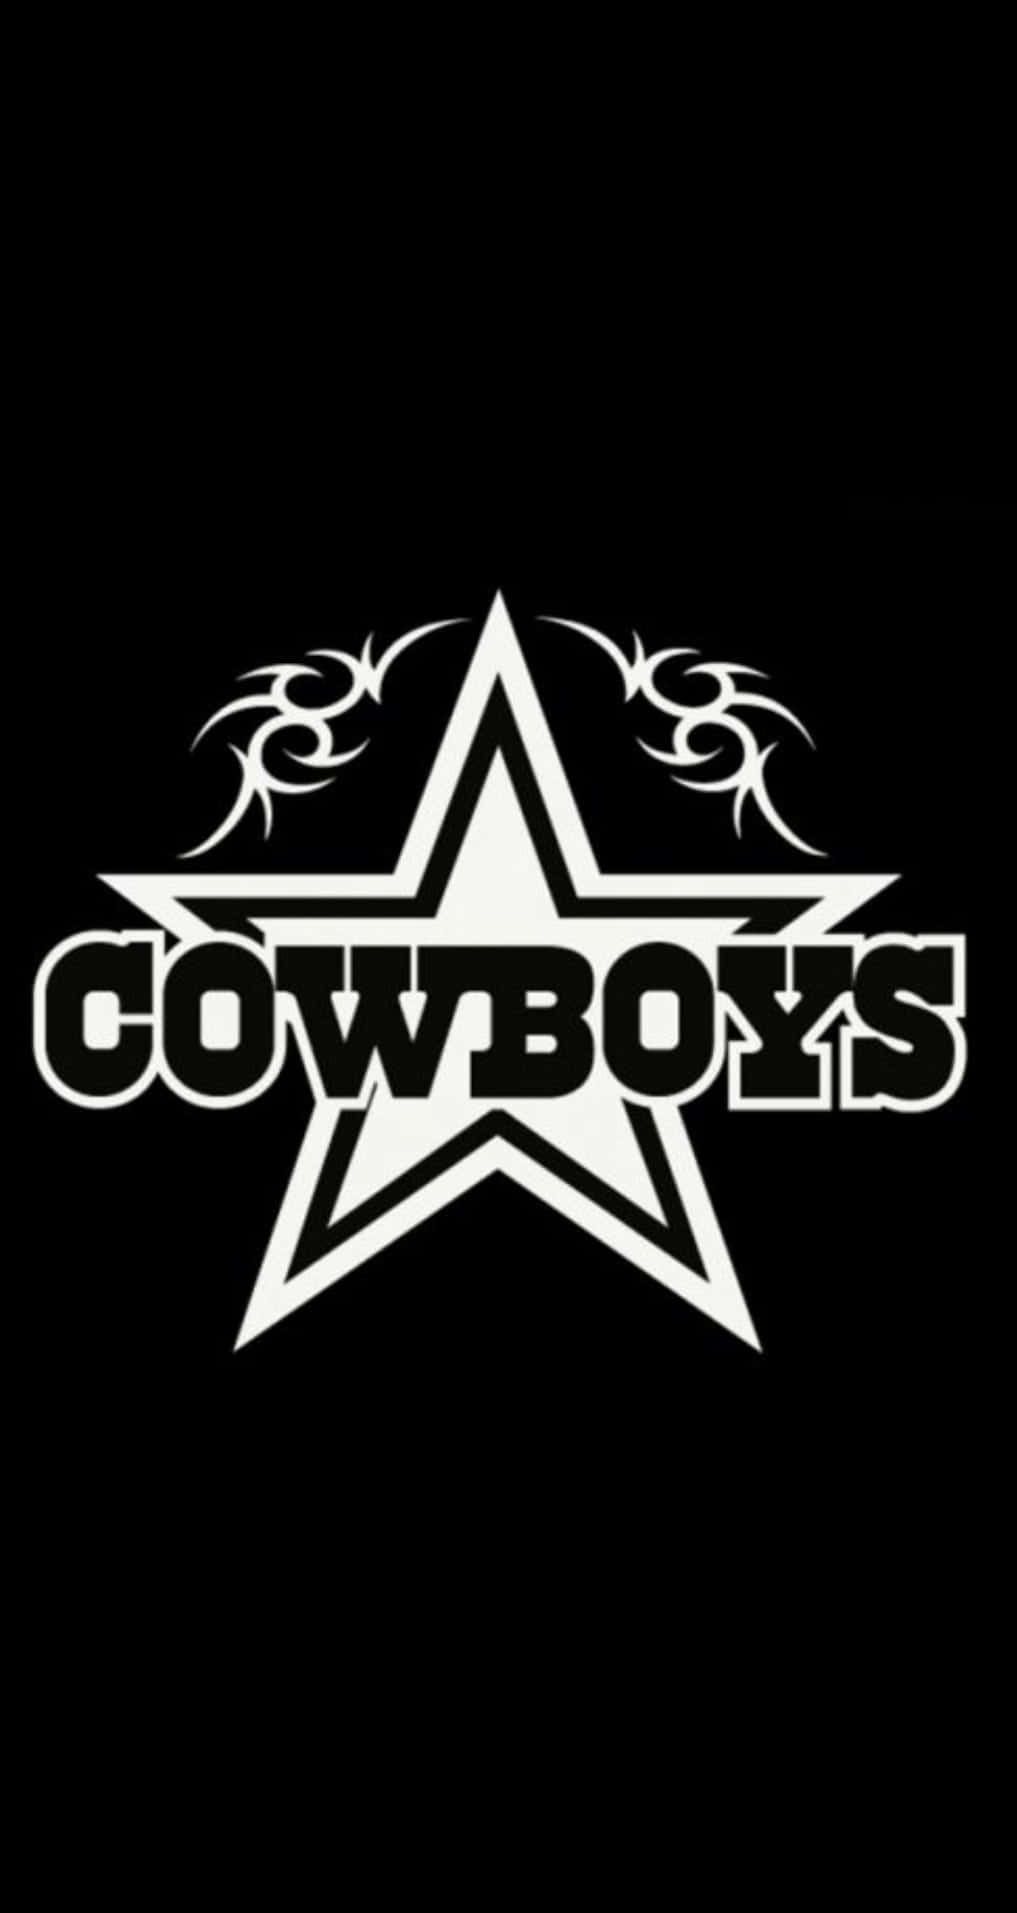 Cowboys'arv: En Rodeotradition